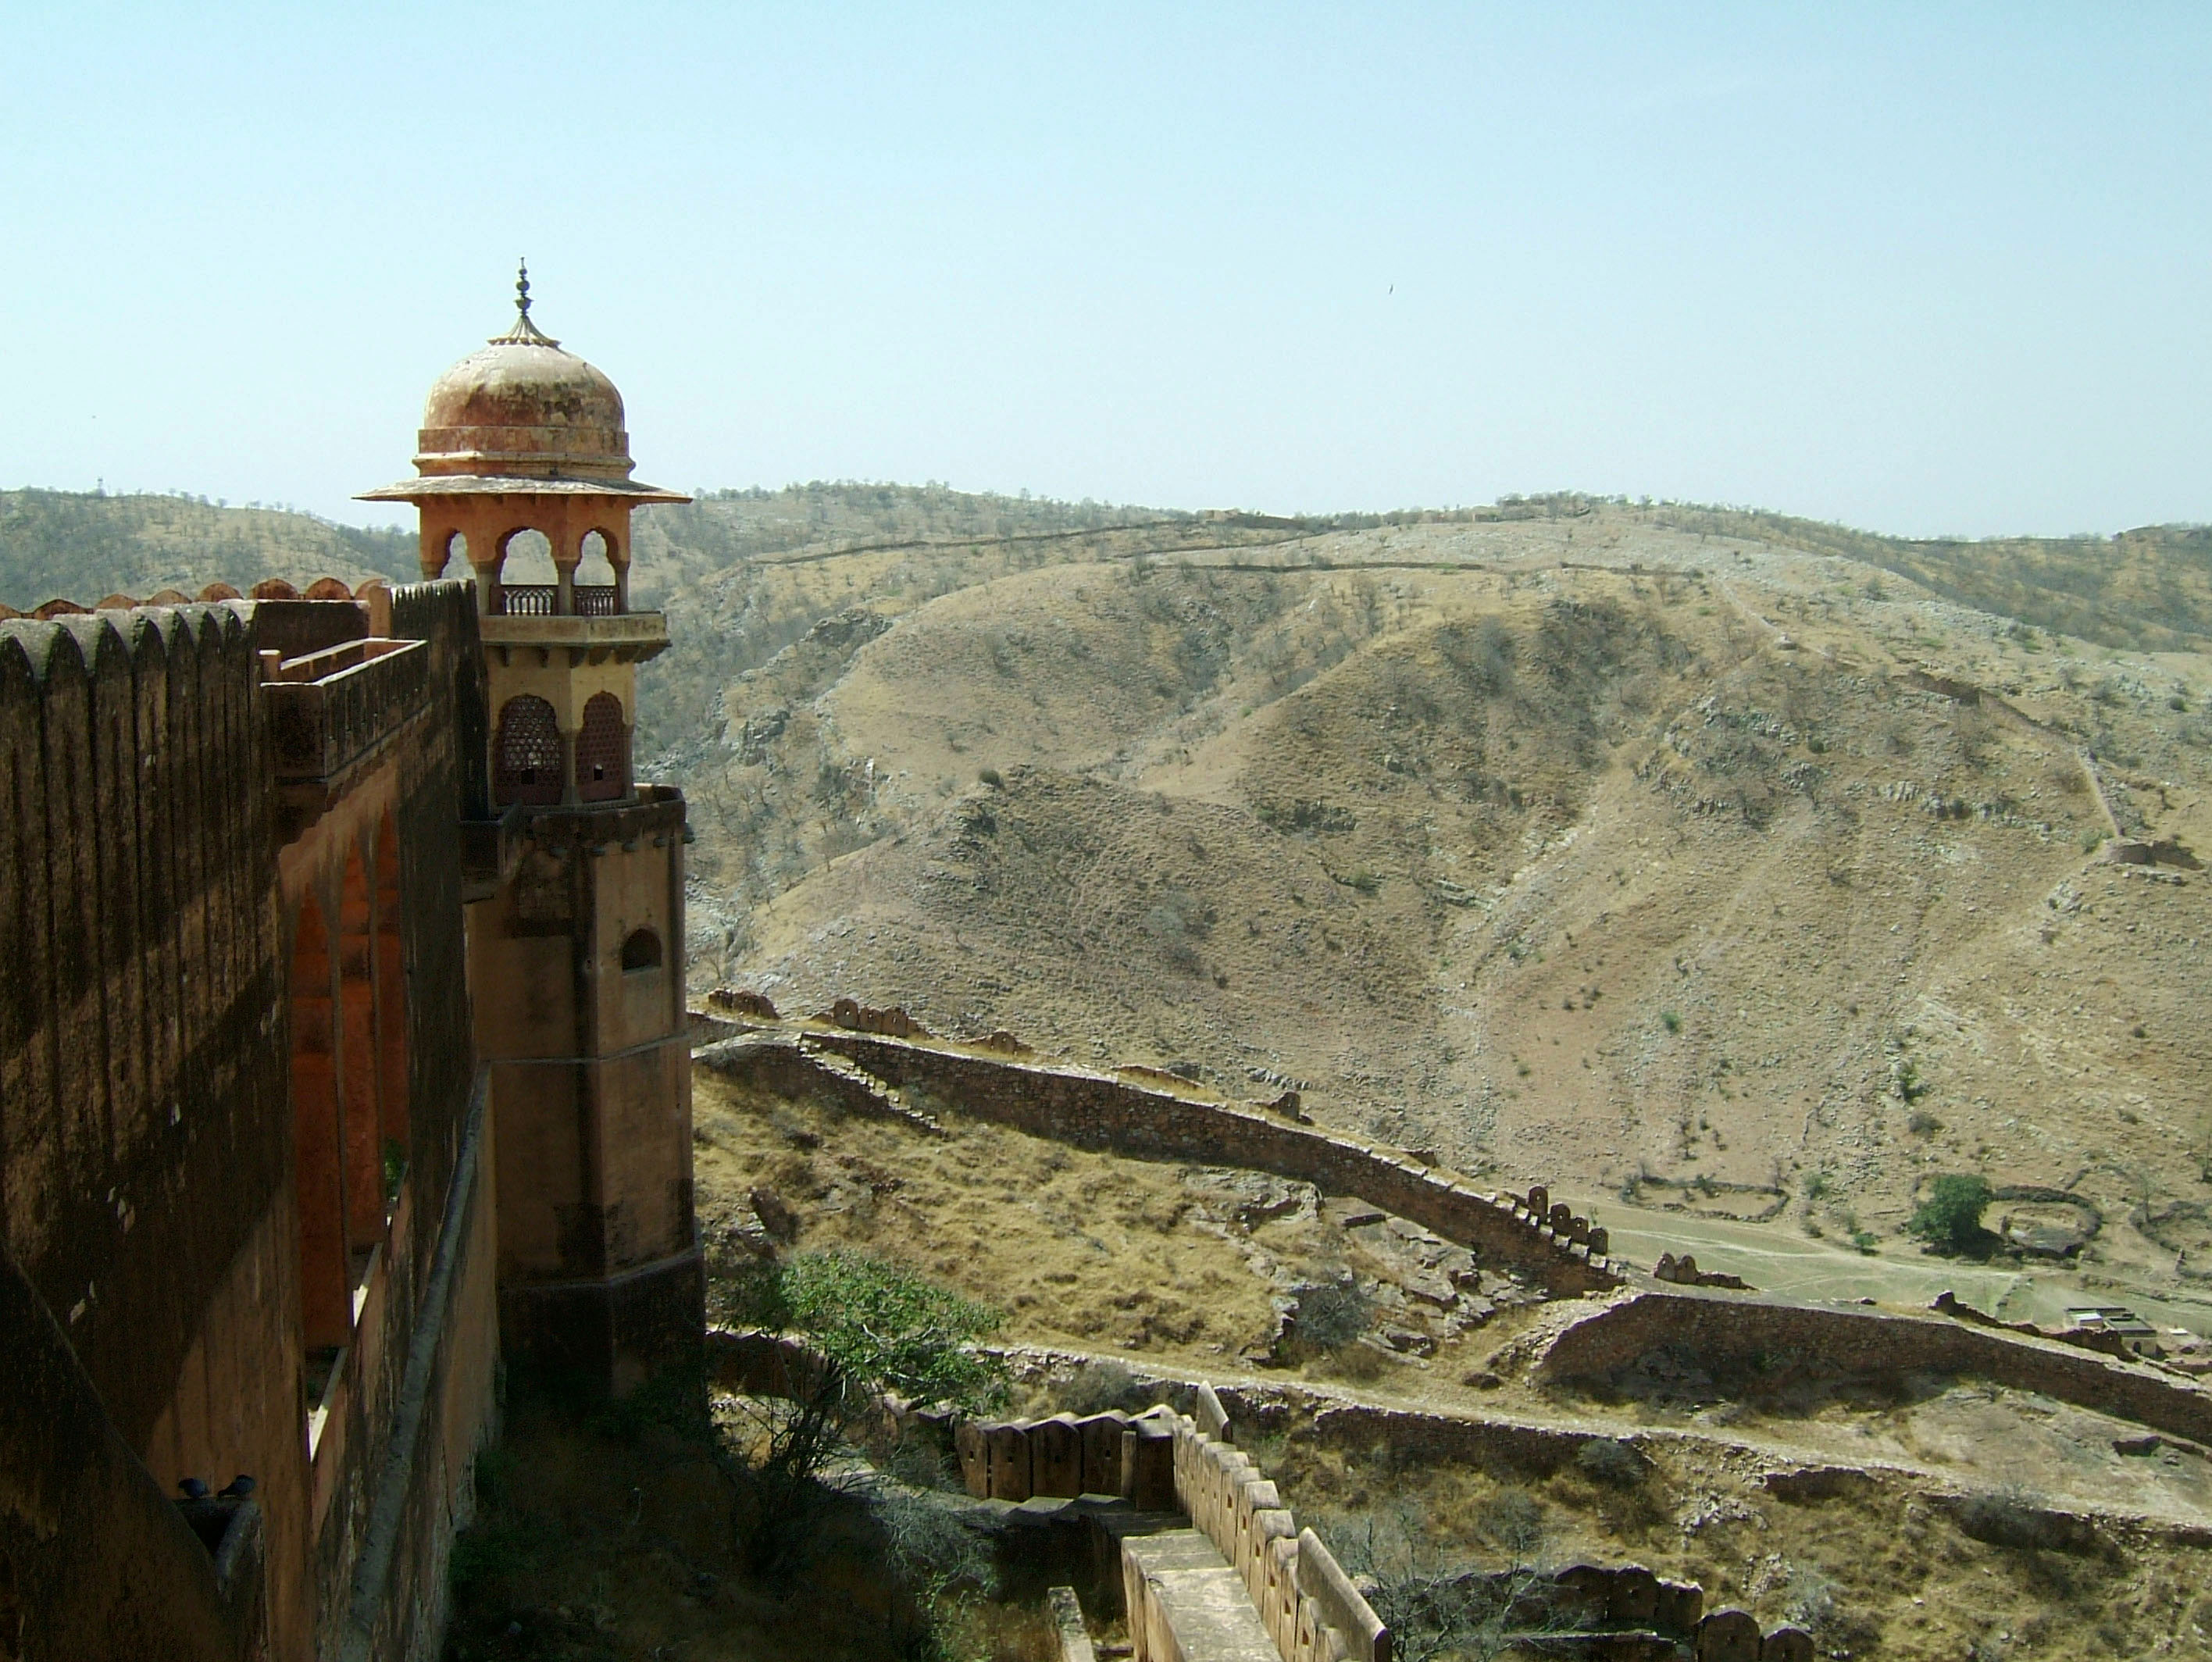 Rajasthan Jaipur Jaigarh Fort Jaivana cannon India Apr 2004 04